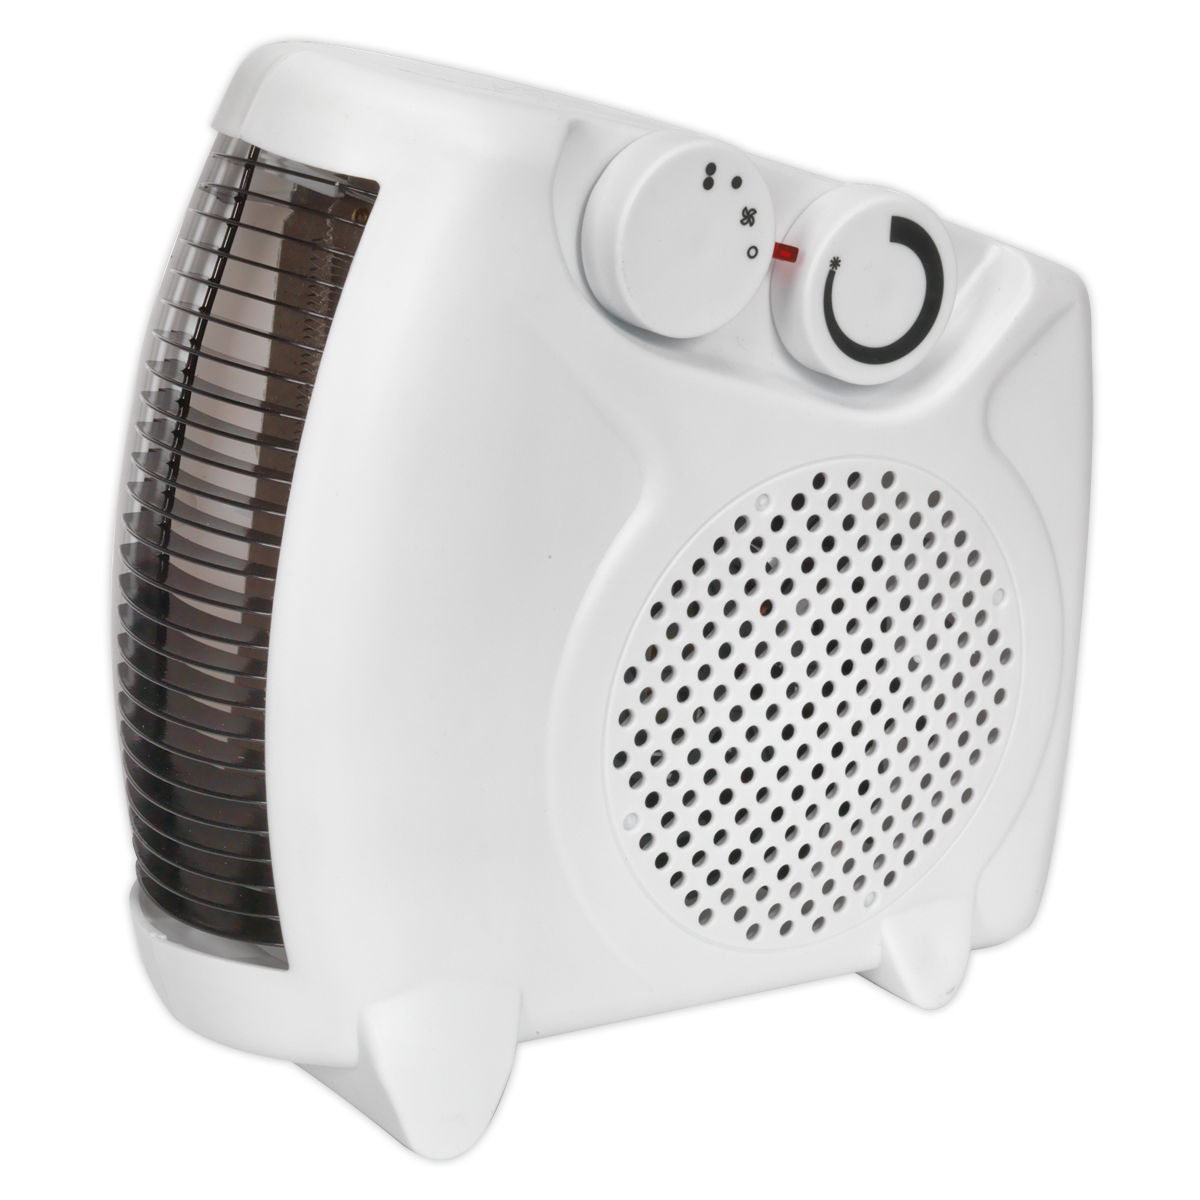 Sealey Fan Heater 2000W/230V 2 Heat Settings & Thermostat